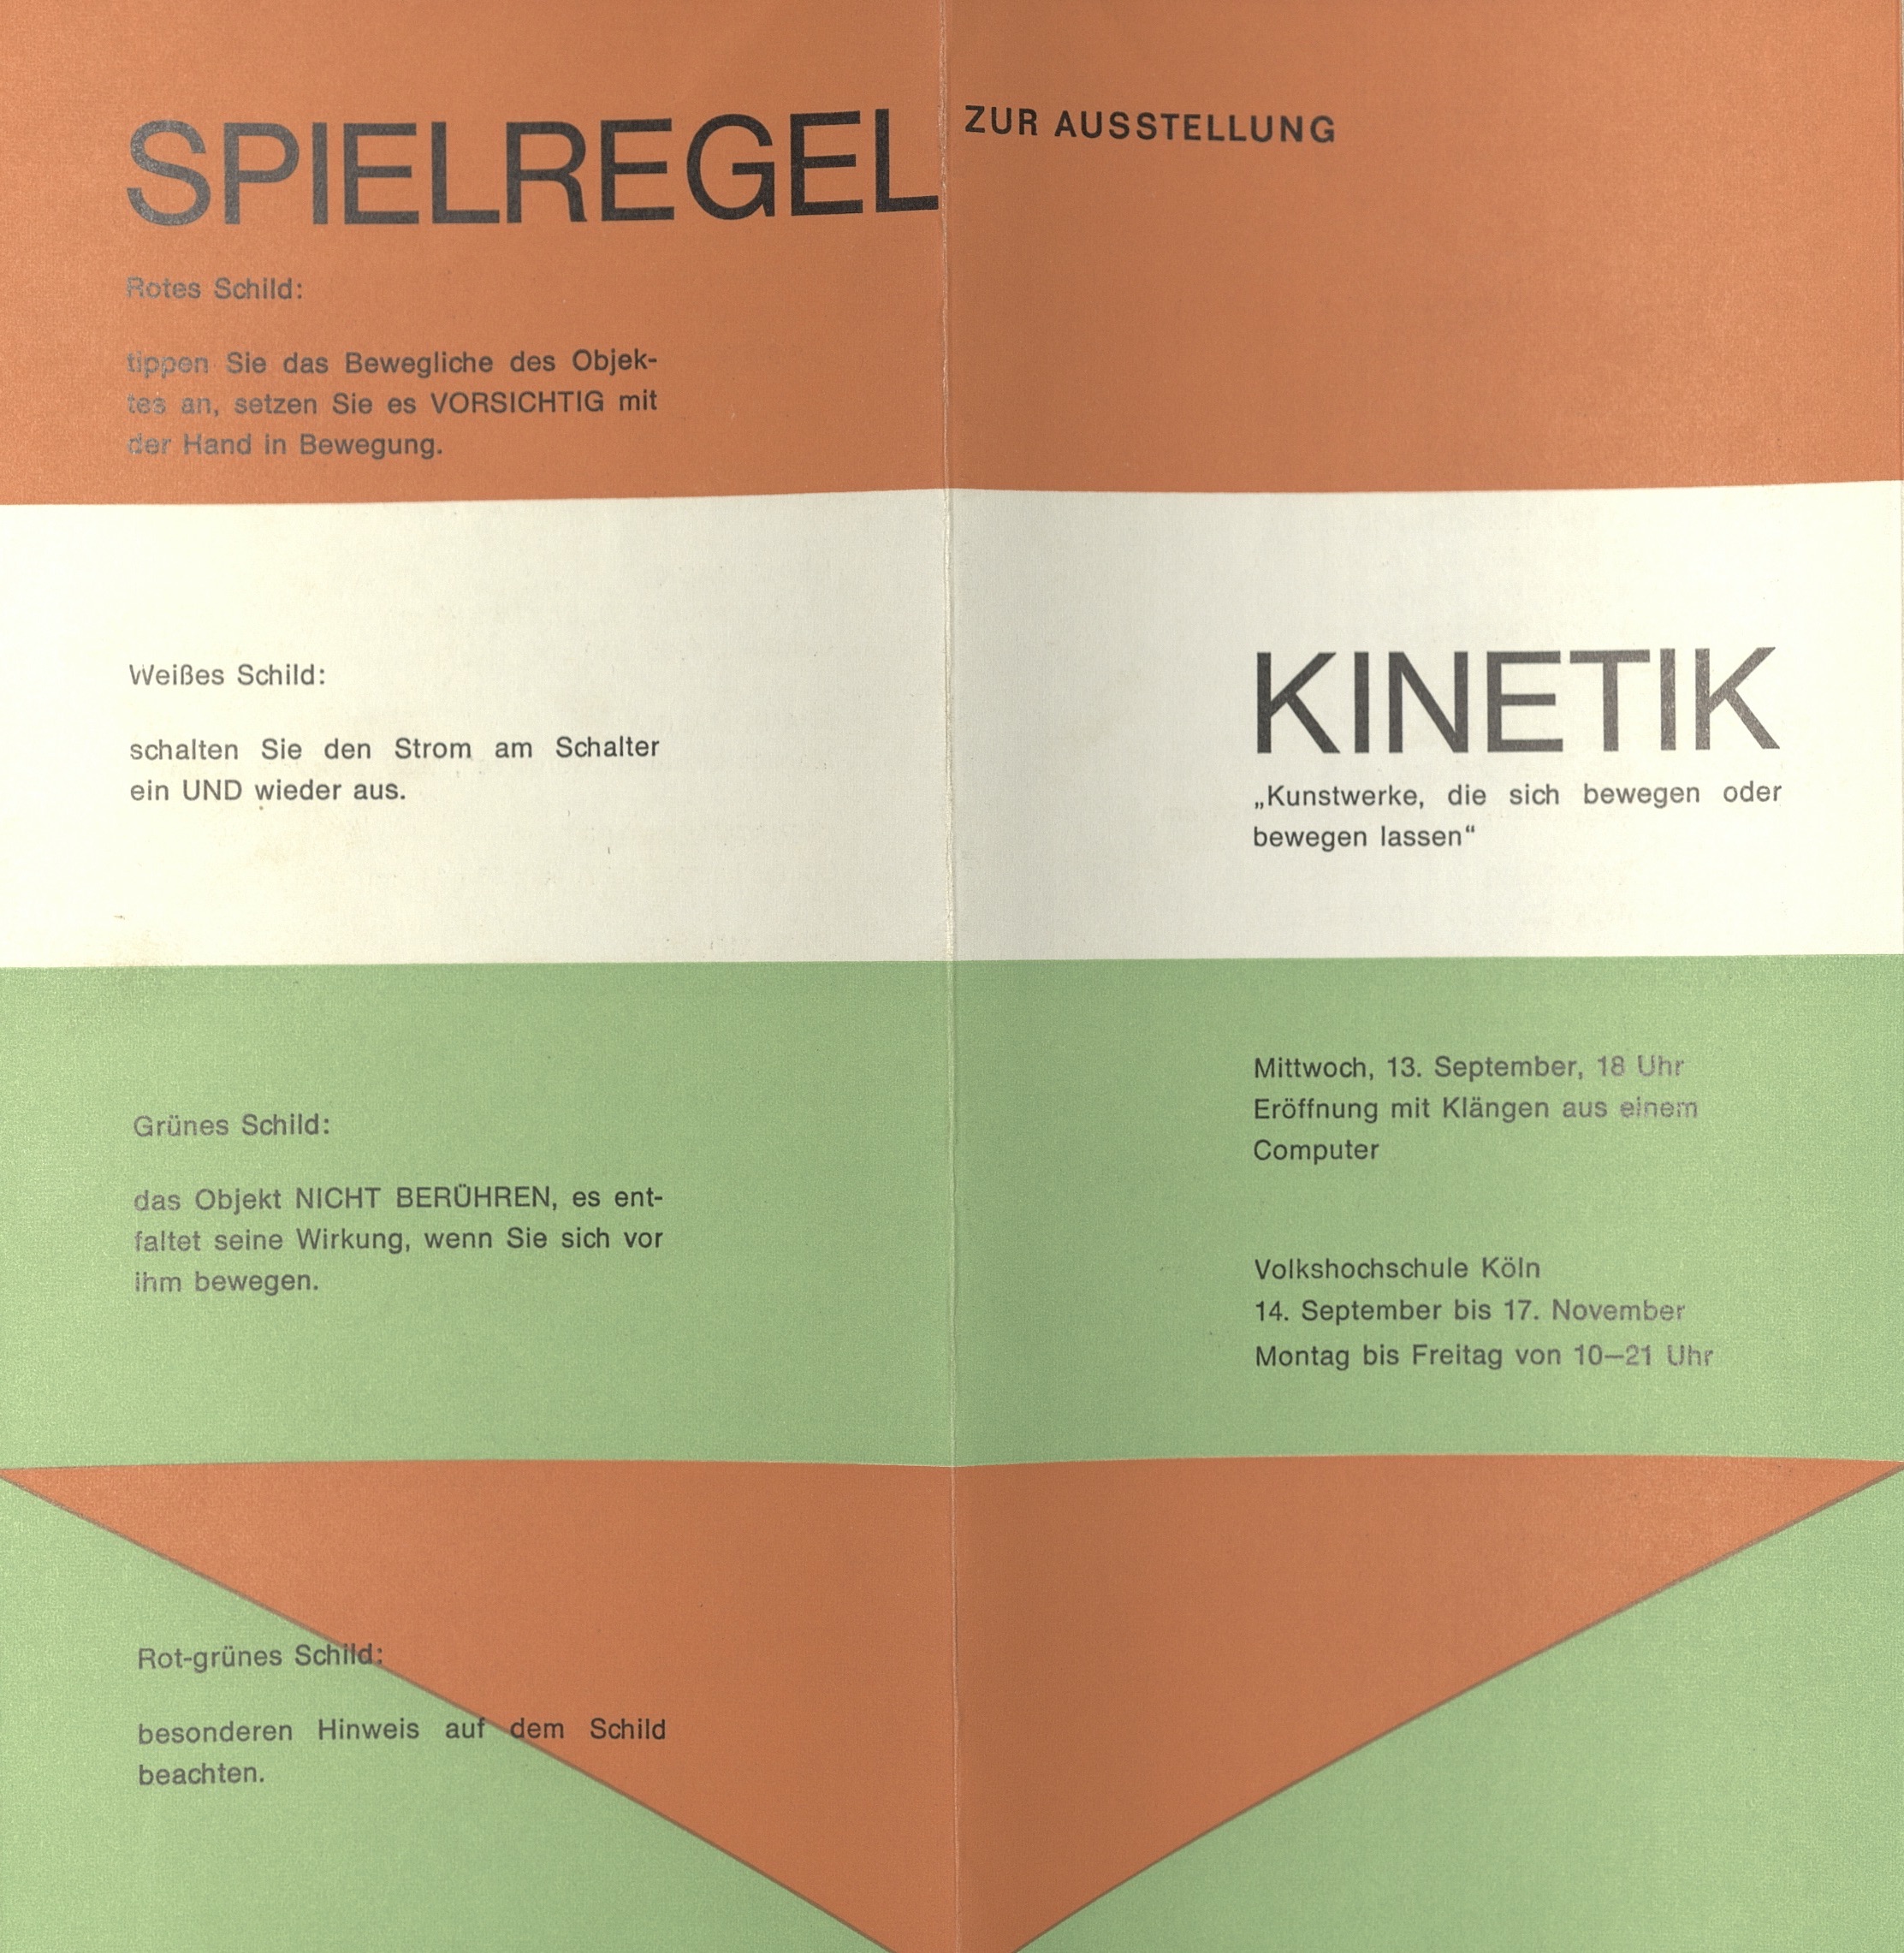 Kinetik, Volkshochschule Köln, Cologne 1967 (Invitation); Archiv der Avantgarden, Staatliche Kunstsammlungen Dresden 